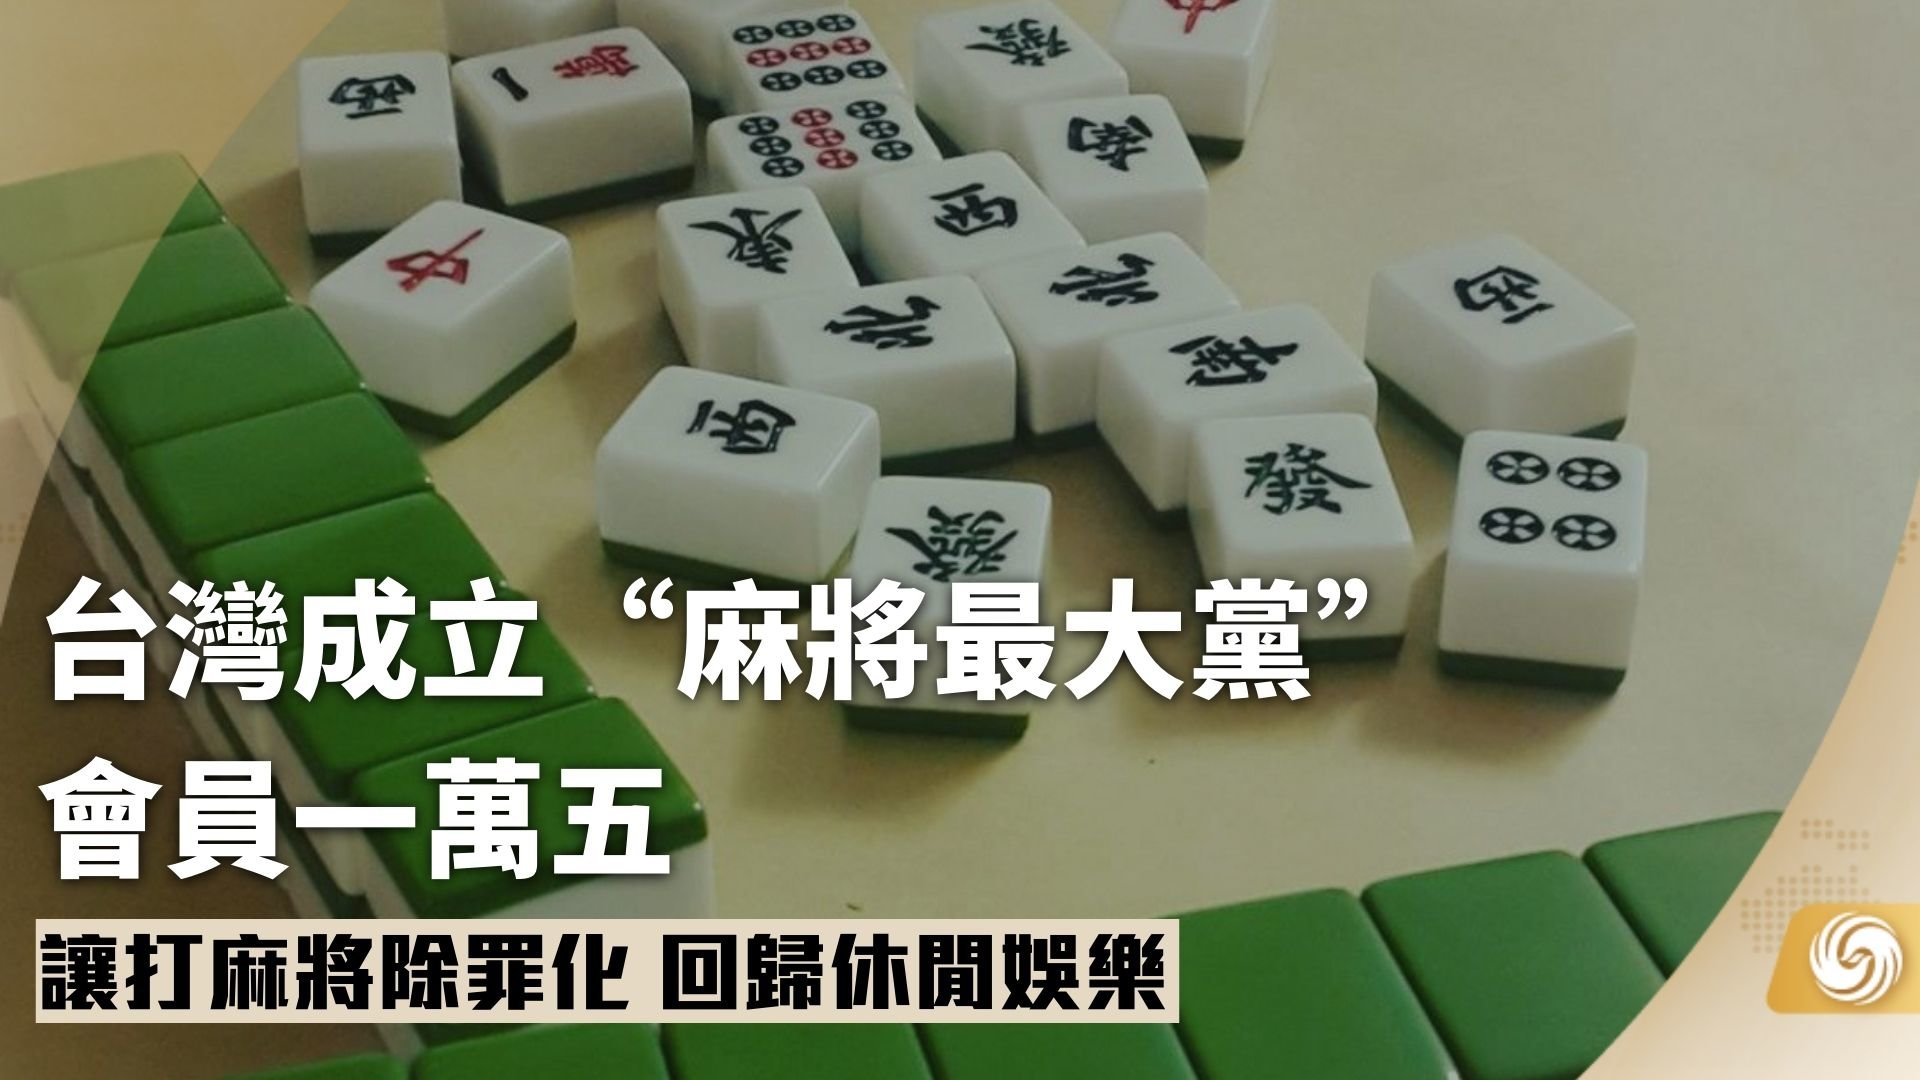 台湾成立“麻将最大党”会员一万五